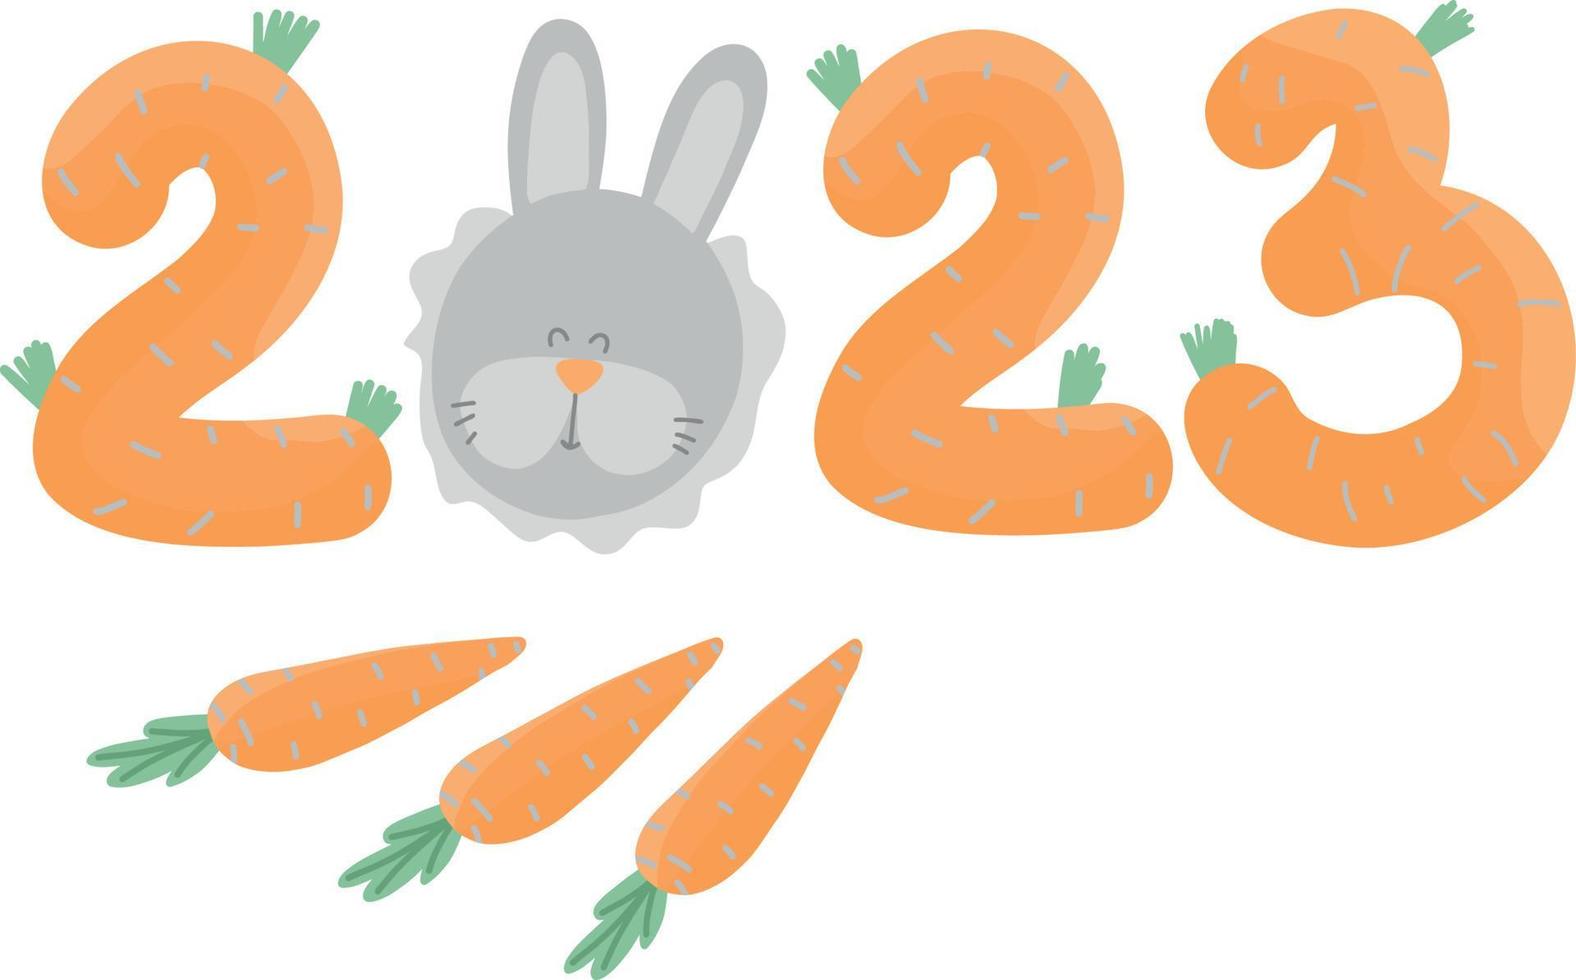 2023 Hasenjahr. große orangefarbene Zahlen wie Karotten mit grauem Hasen. chinesisches neujahrssymbol, festliche grußkarte. Vektor-Illustration isoliert auf weißem Hintergrund vektor